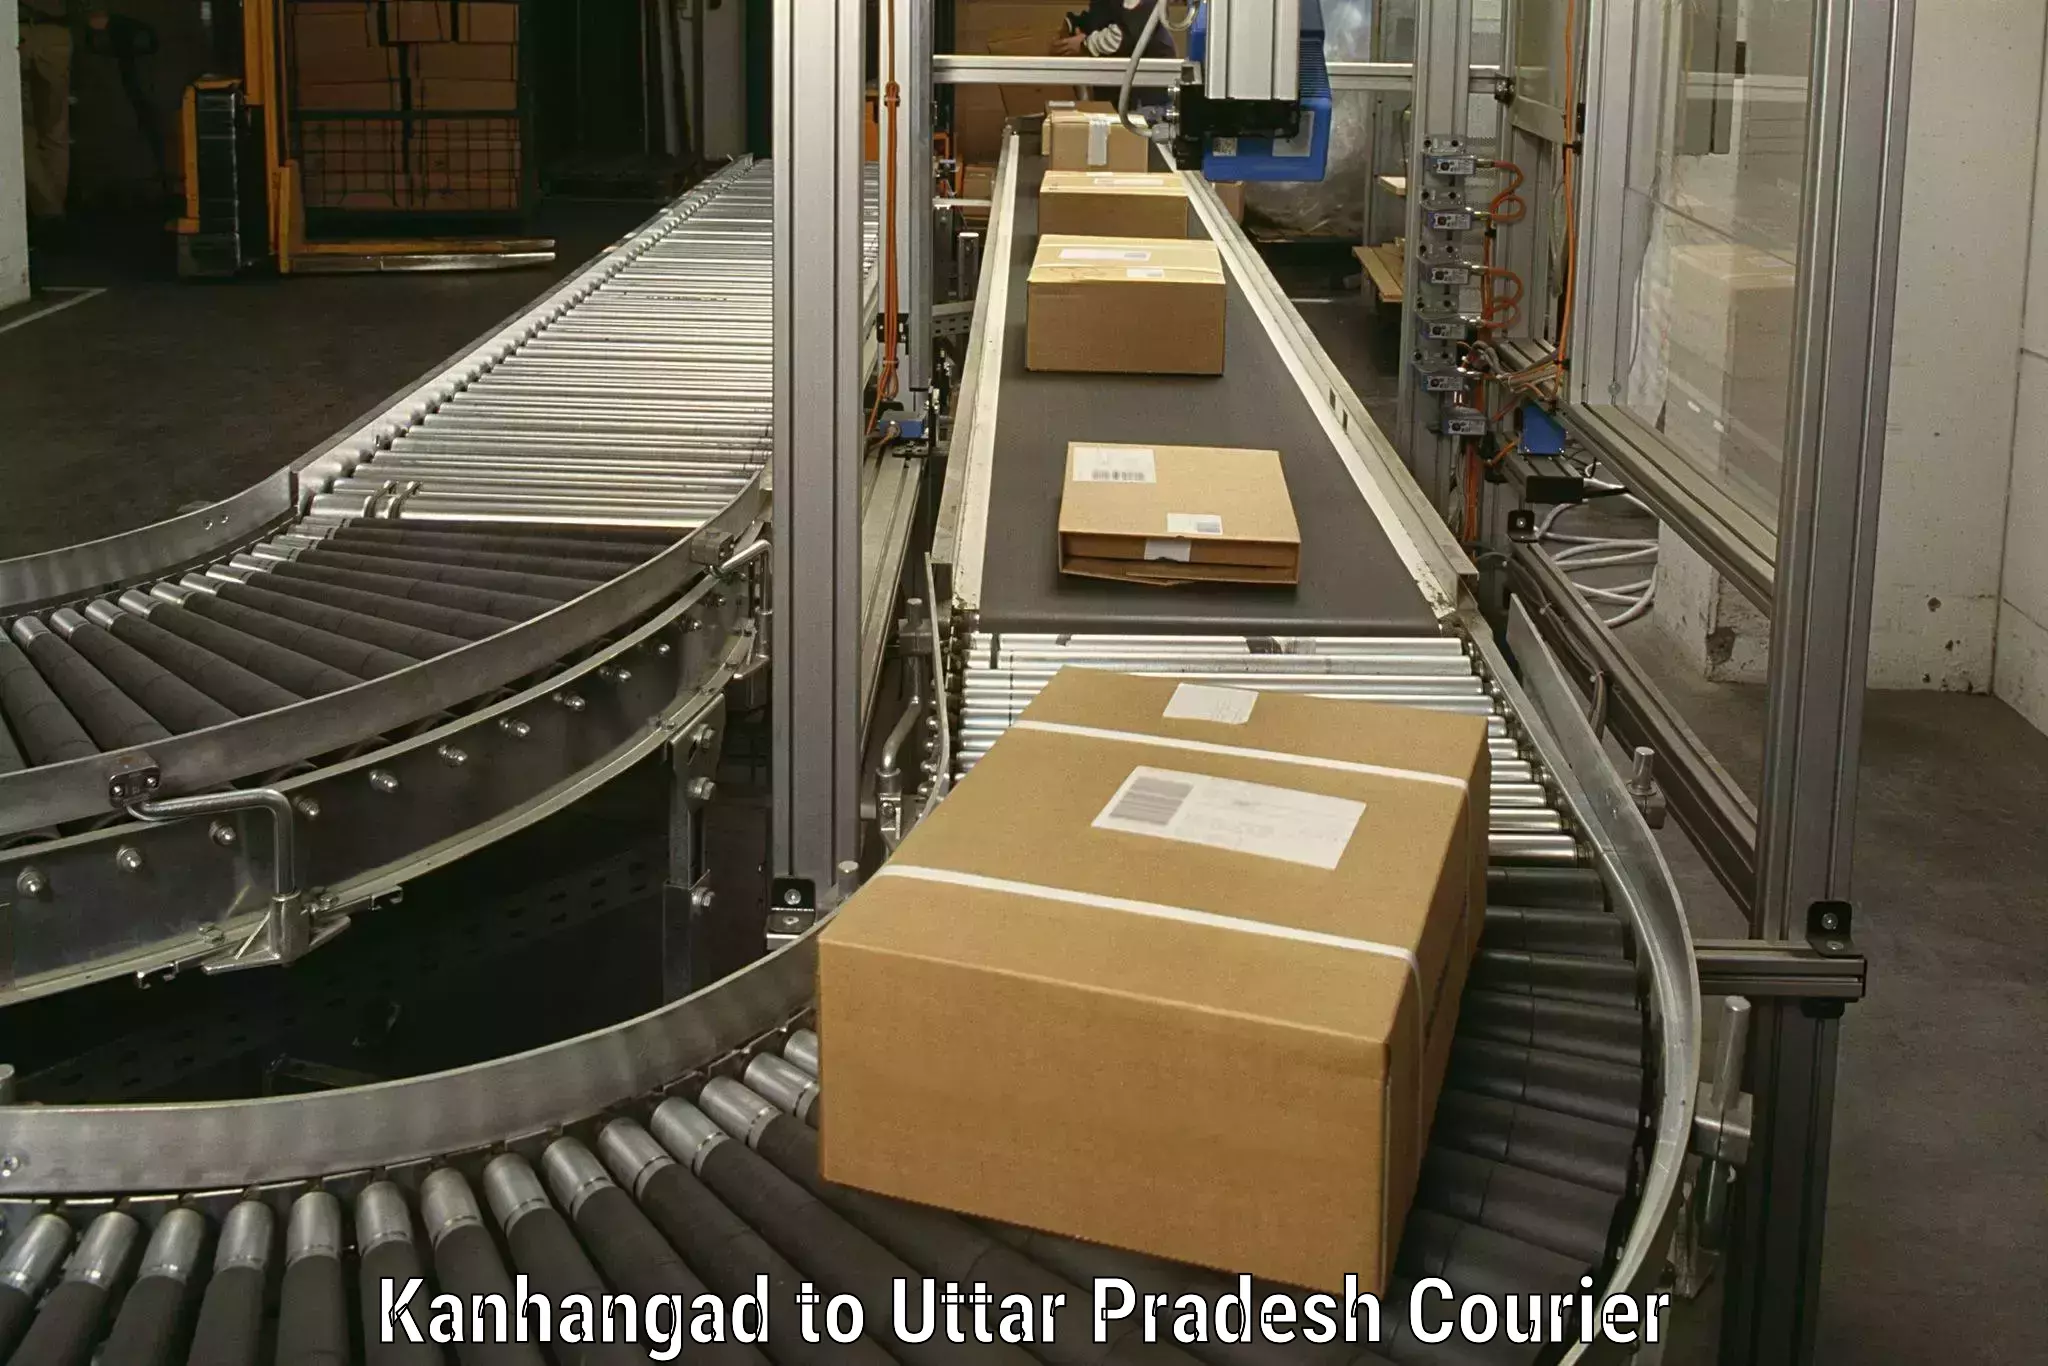 Furniture moving experts Kanhangad to Uttar Pradesh